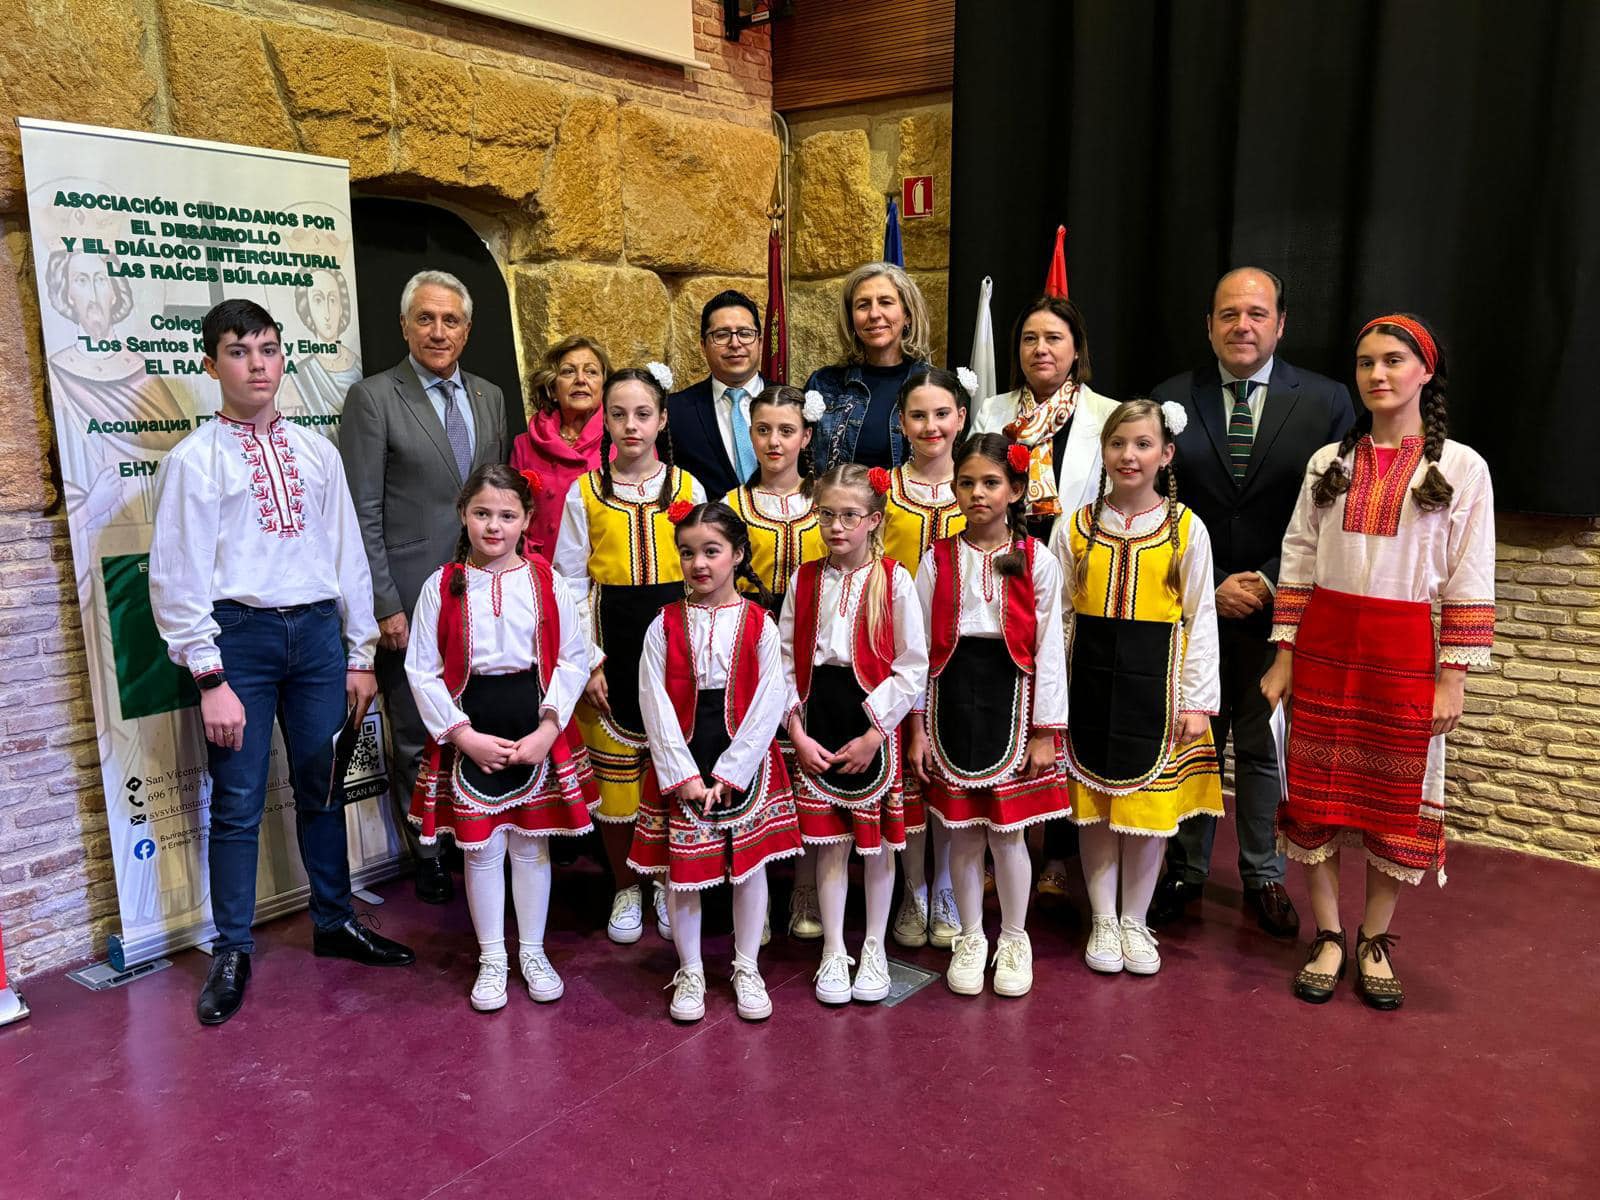 Генералният консул на България във Валенсия Надя Кръстева посети автономна област Мурсия